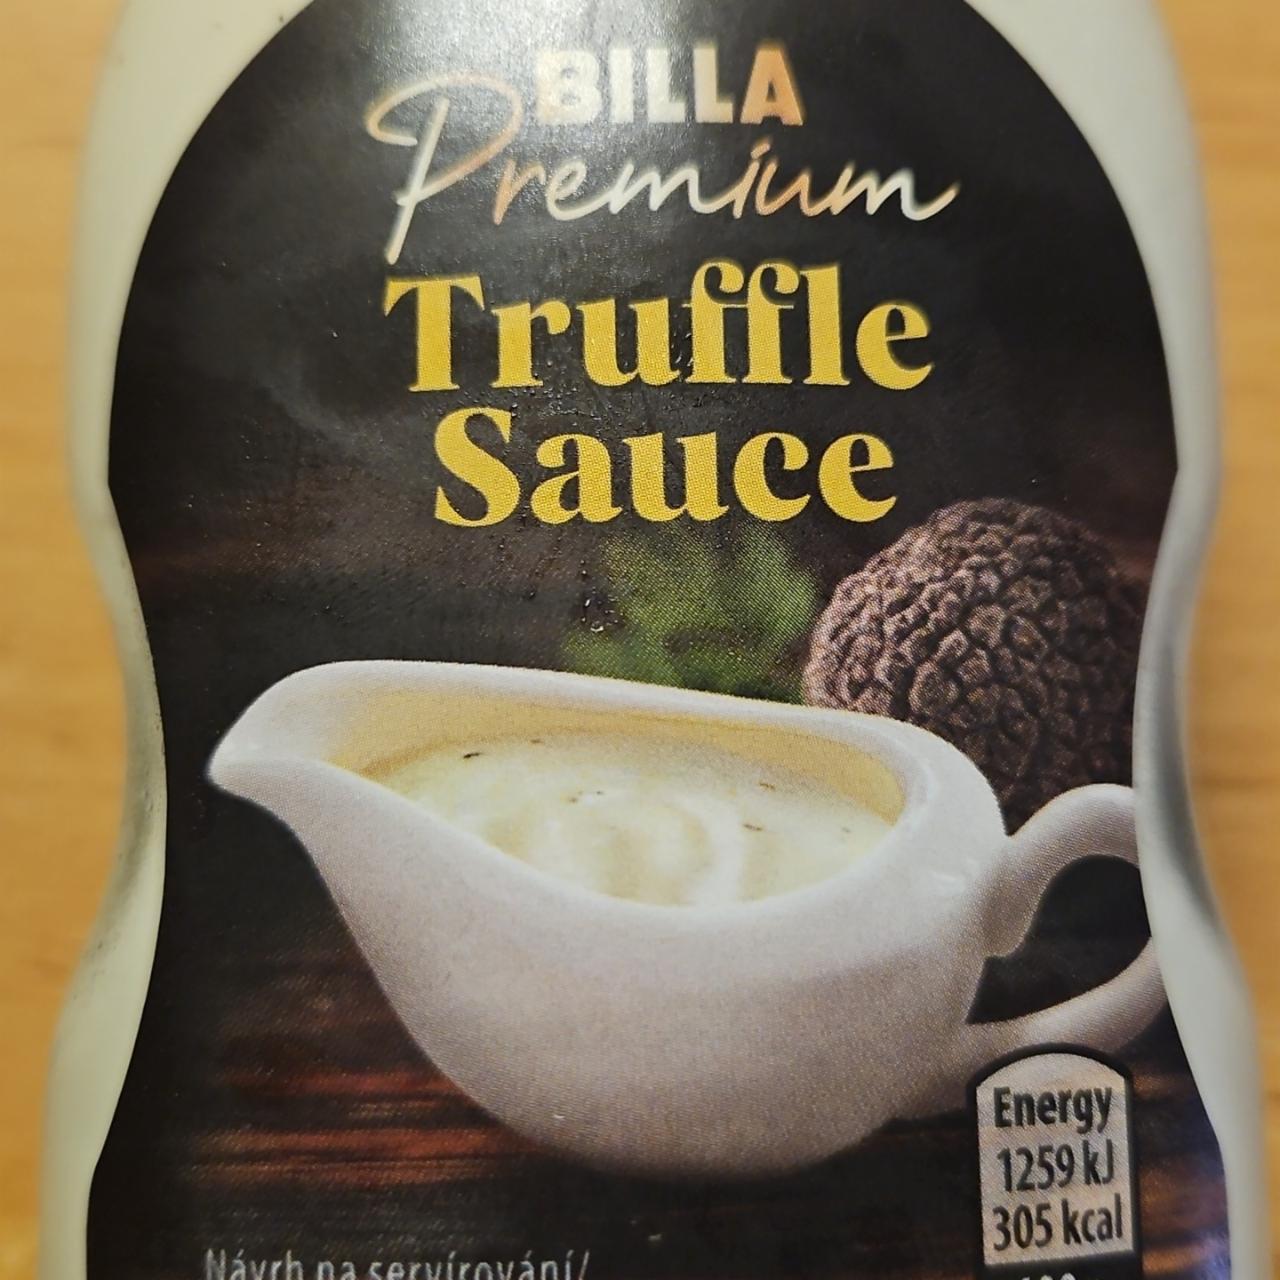 Fotografie - Truffle Sauce Billa Premium